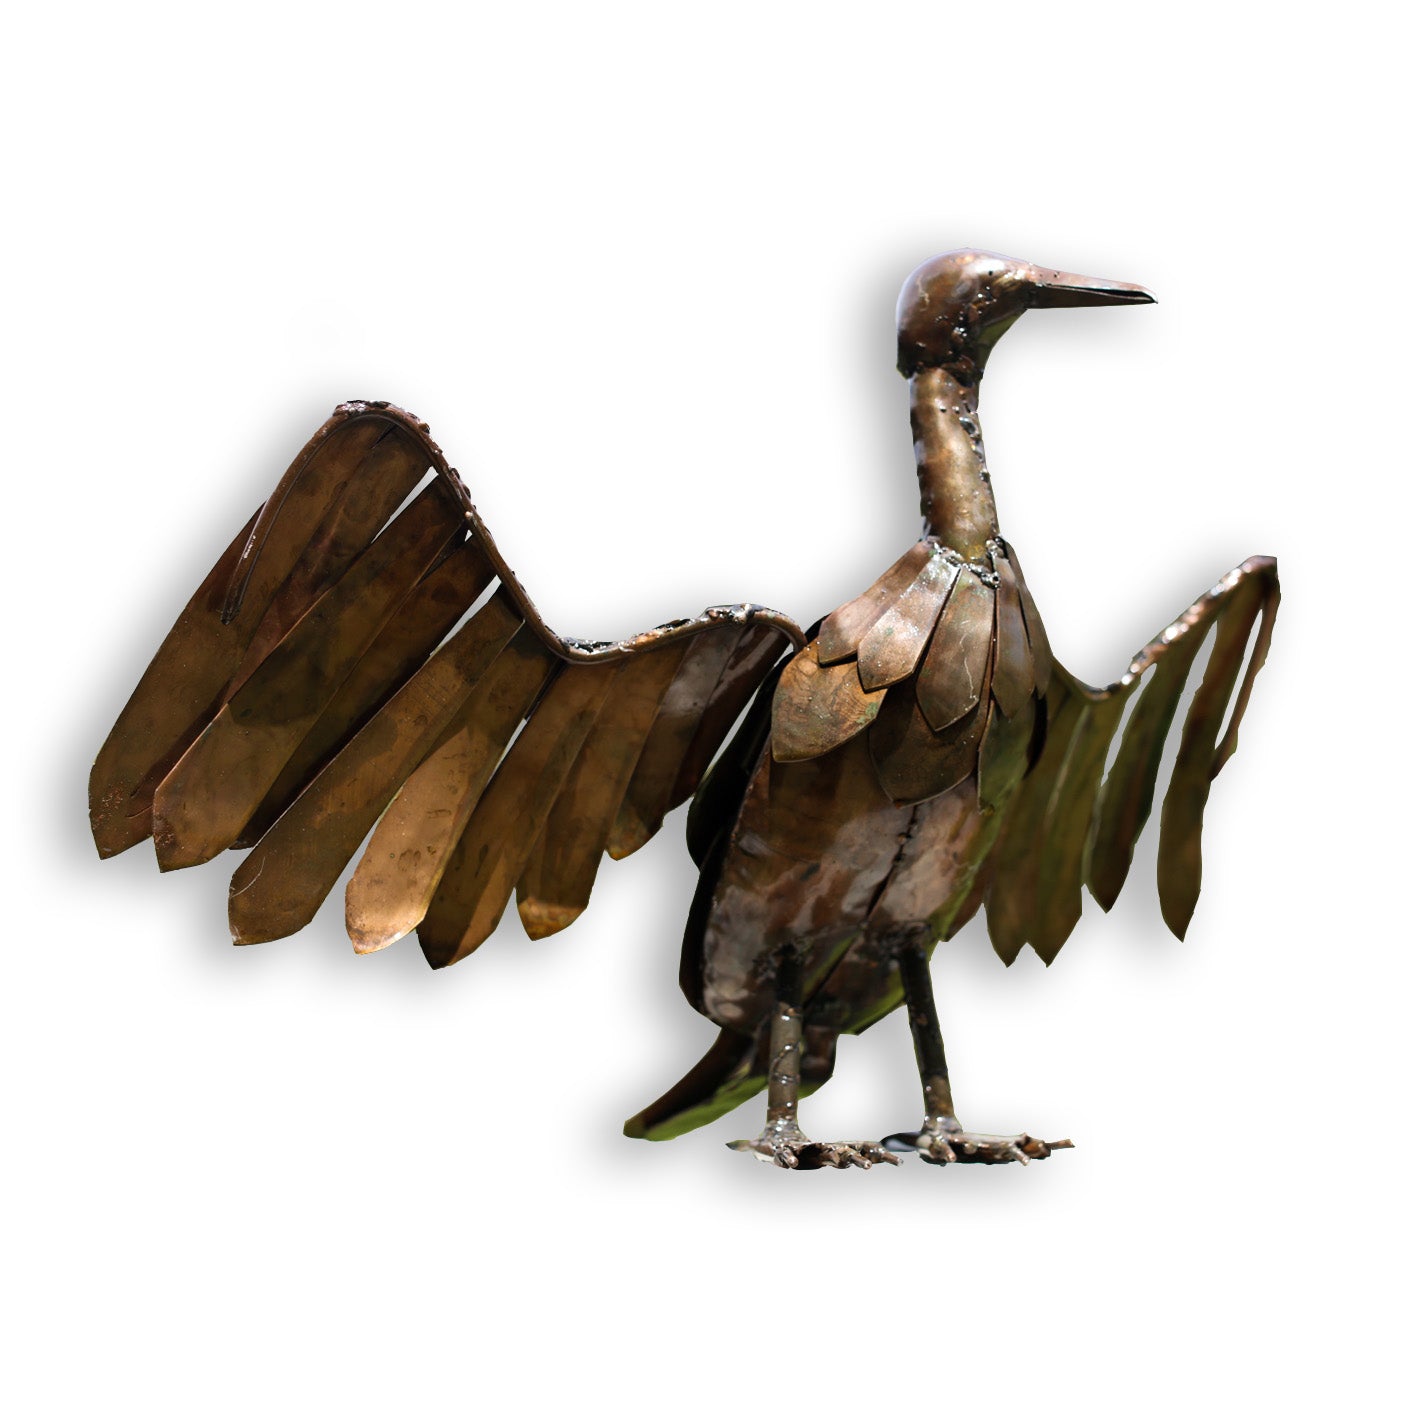 Common Cormorant or Shag